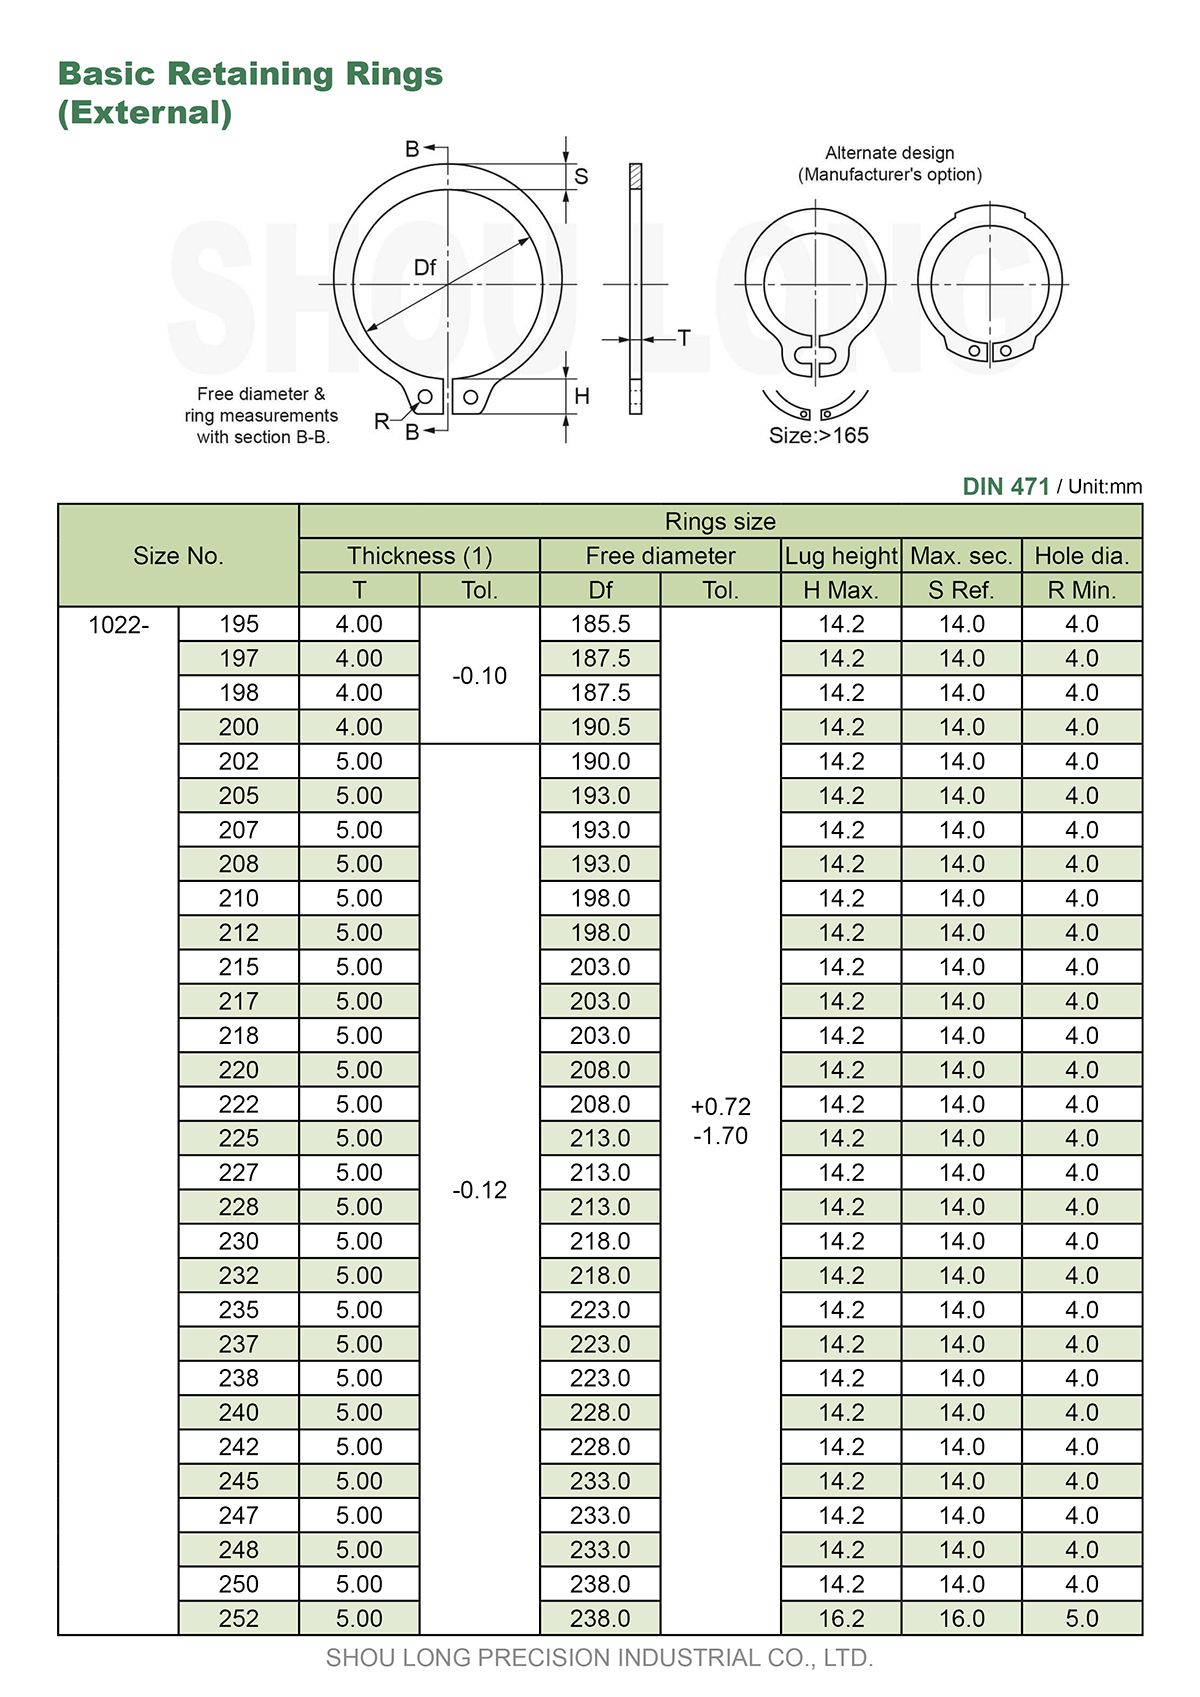 ข้อมูลของวงแหวนรัดพื้นฐานเมตริกสำหรับแกน DIN471-5